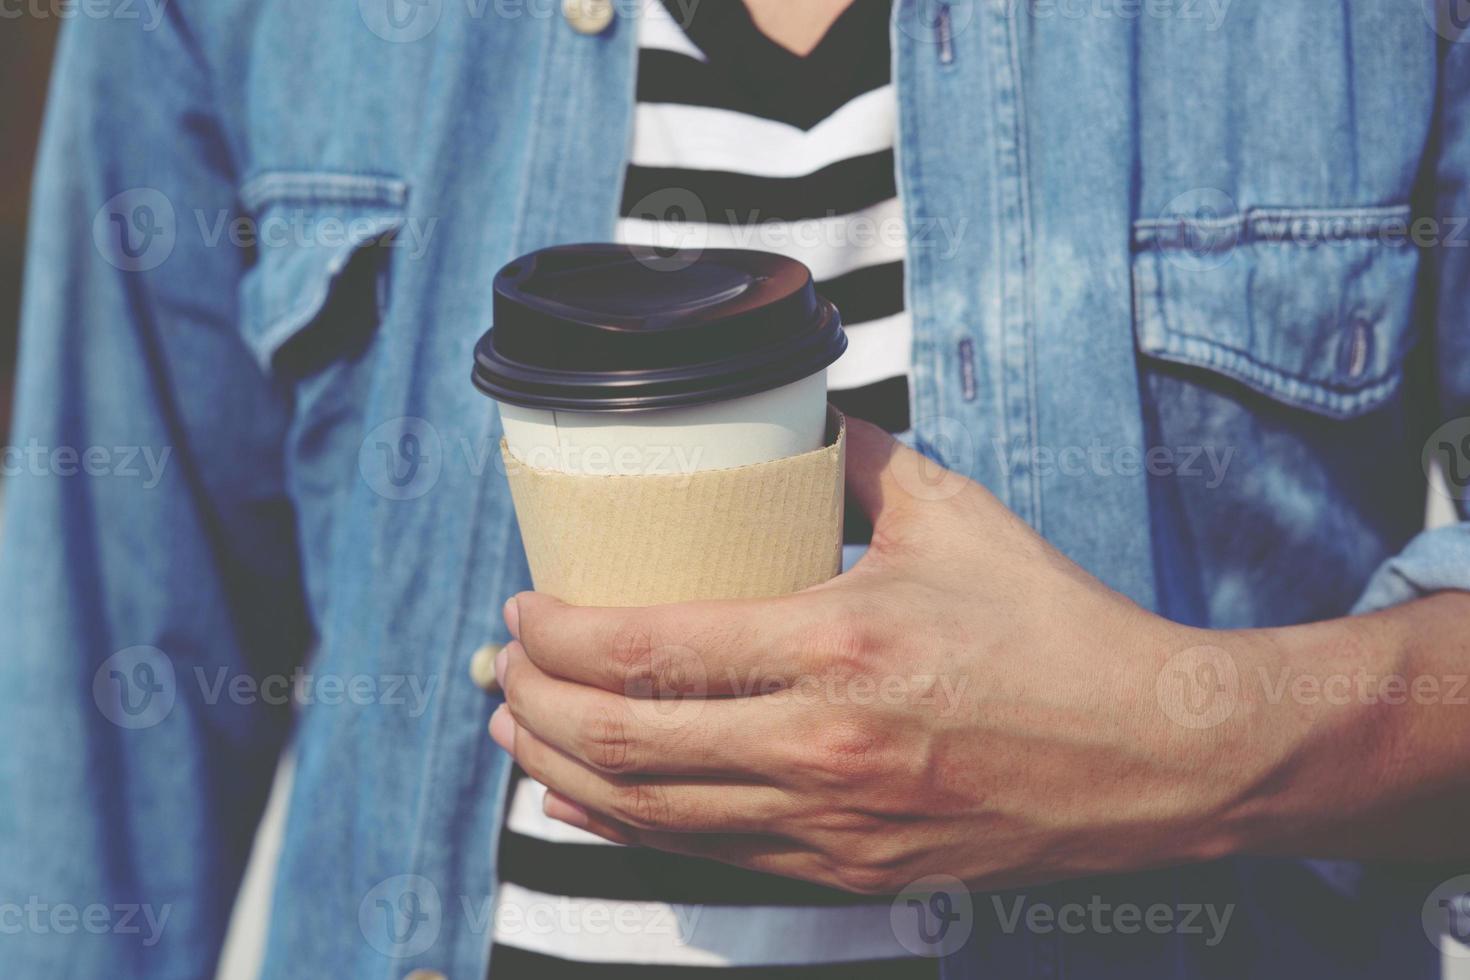 jeune homme main tenant une tasse de papier à emporter en buvant du café chaud sur le café-café. photo